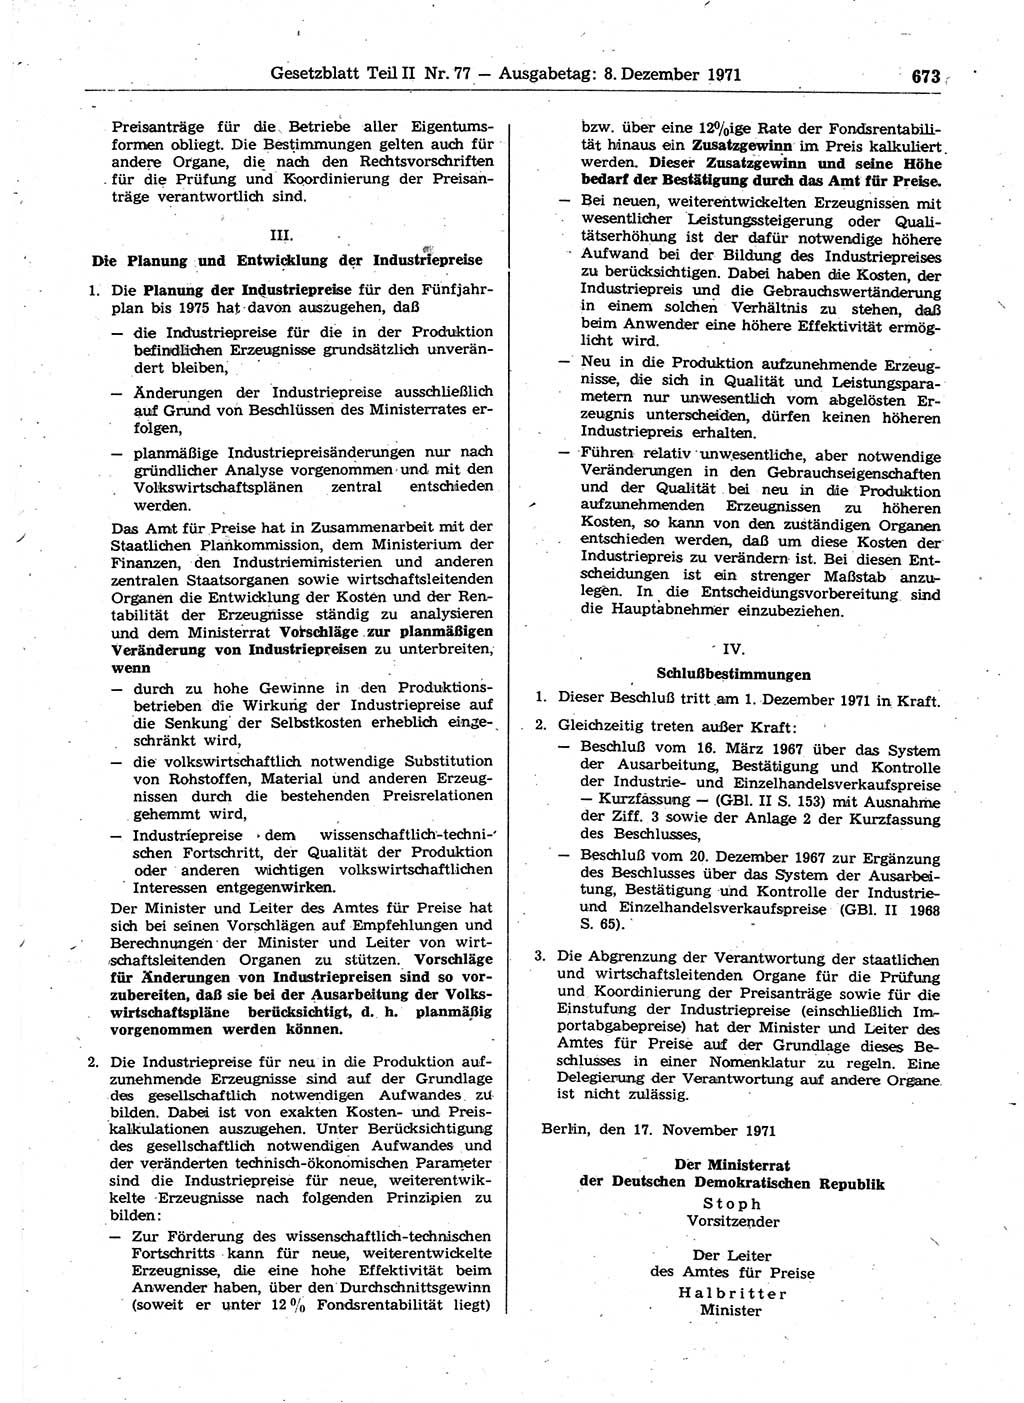 Gesetzblatt (GBl.) der Deutschen Demokratischen Republik (DDR) Teil ⅠⅠ 1971, Seite 673 (GBl. DDR ⅠⅠ 1971, S. 673)